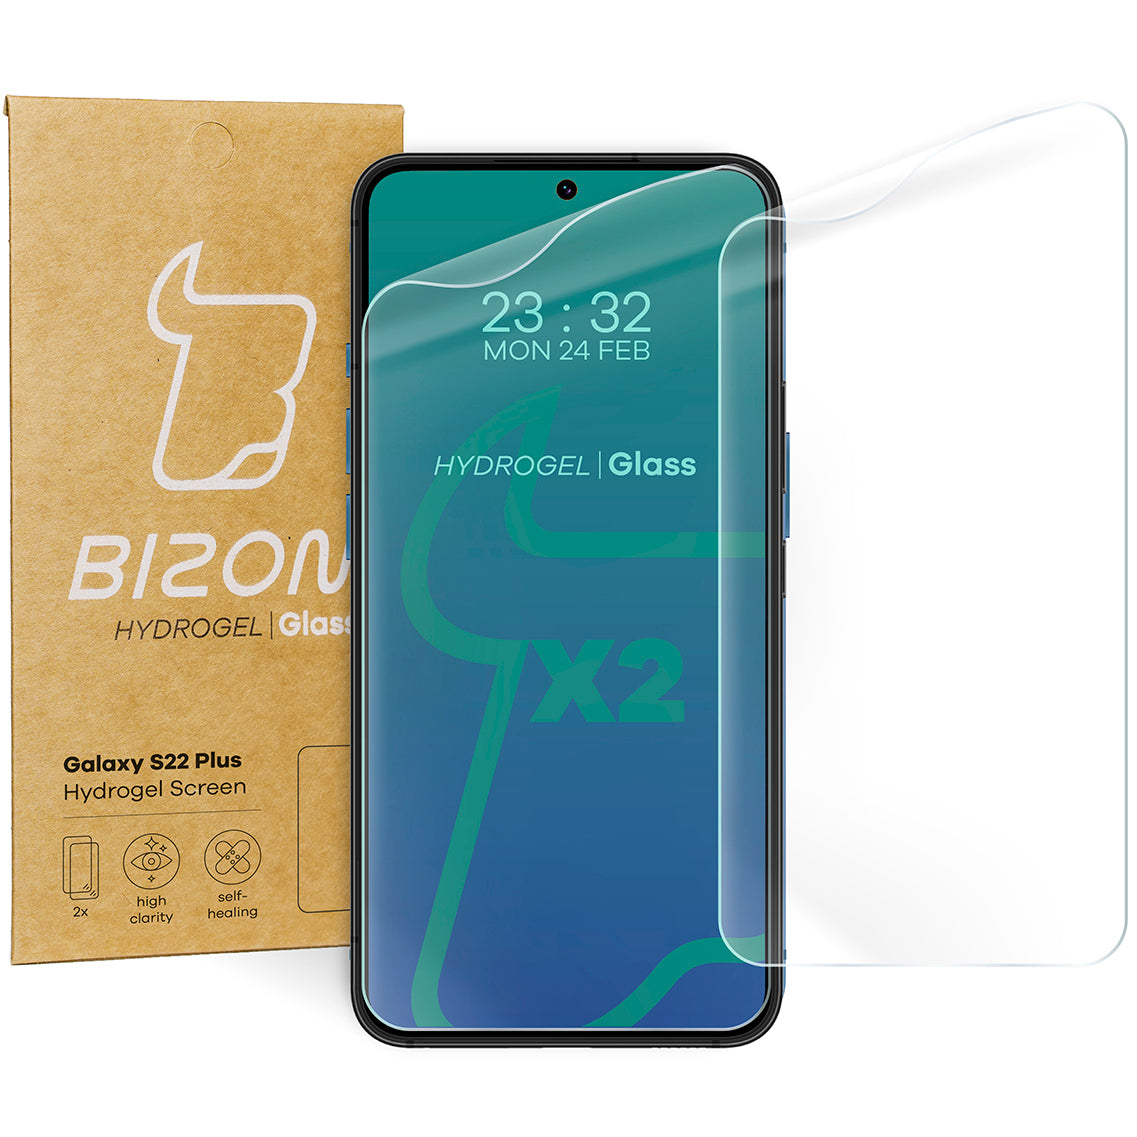 Hydrogel Folie für den Bildschirm Bizon Glass Hydrogel, Galaxy S22 Plus, 2 Stück